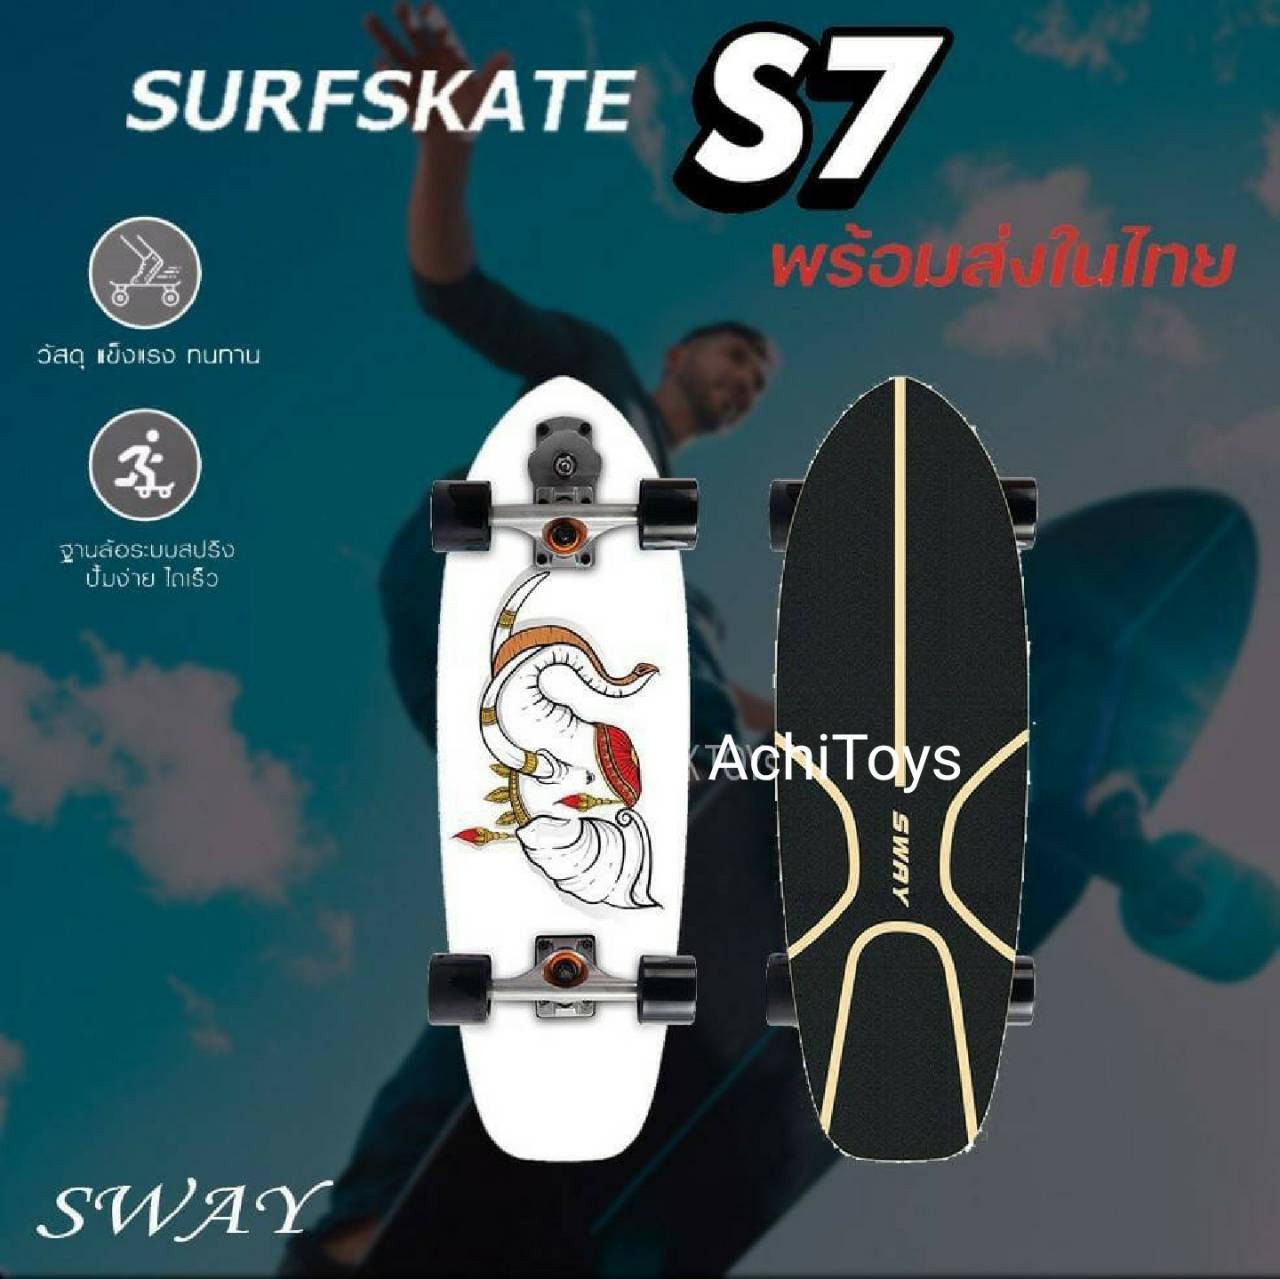 เซิร์ฟสเก็ต ล้อแสง Surfskate S7 เซิร์ฟสเก็ต 30 นิ้ว -AchiToys